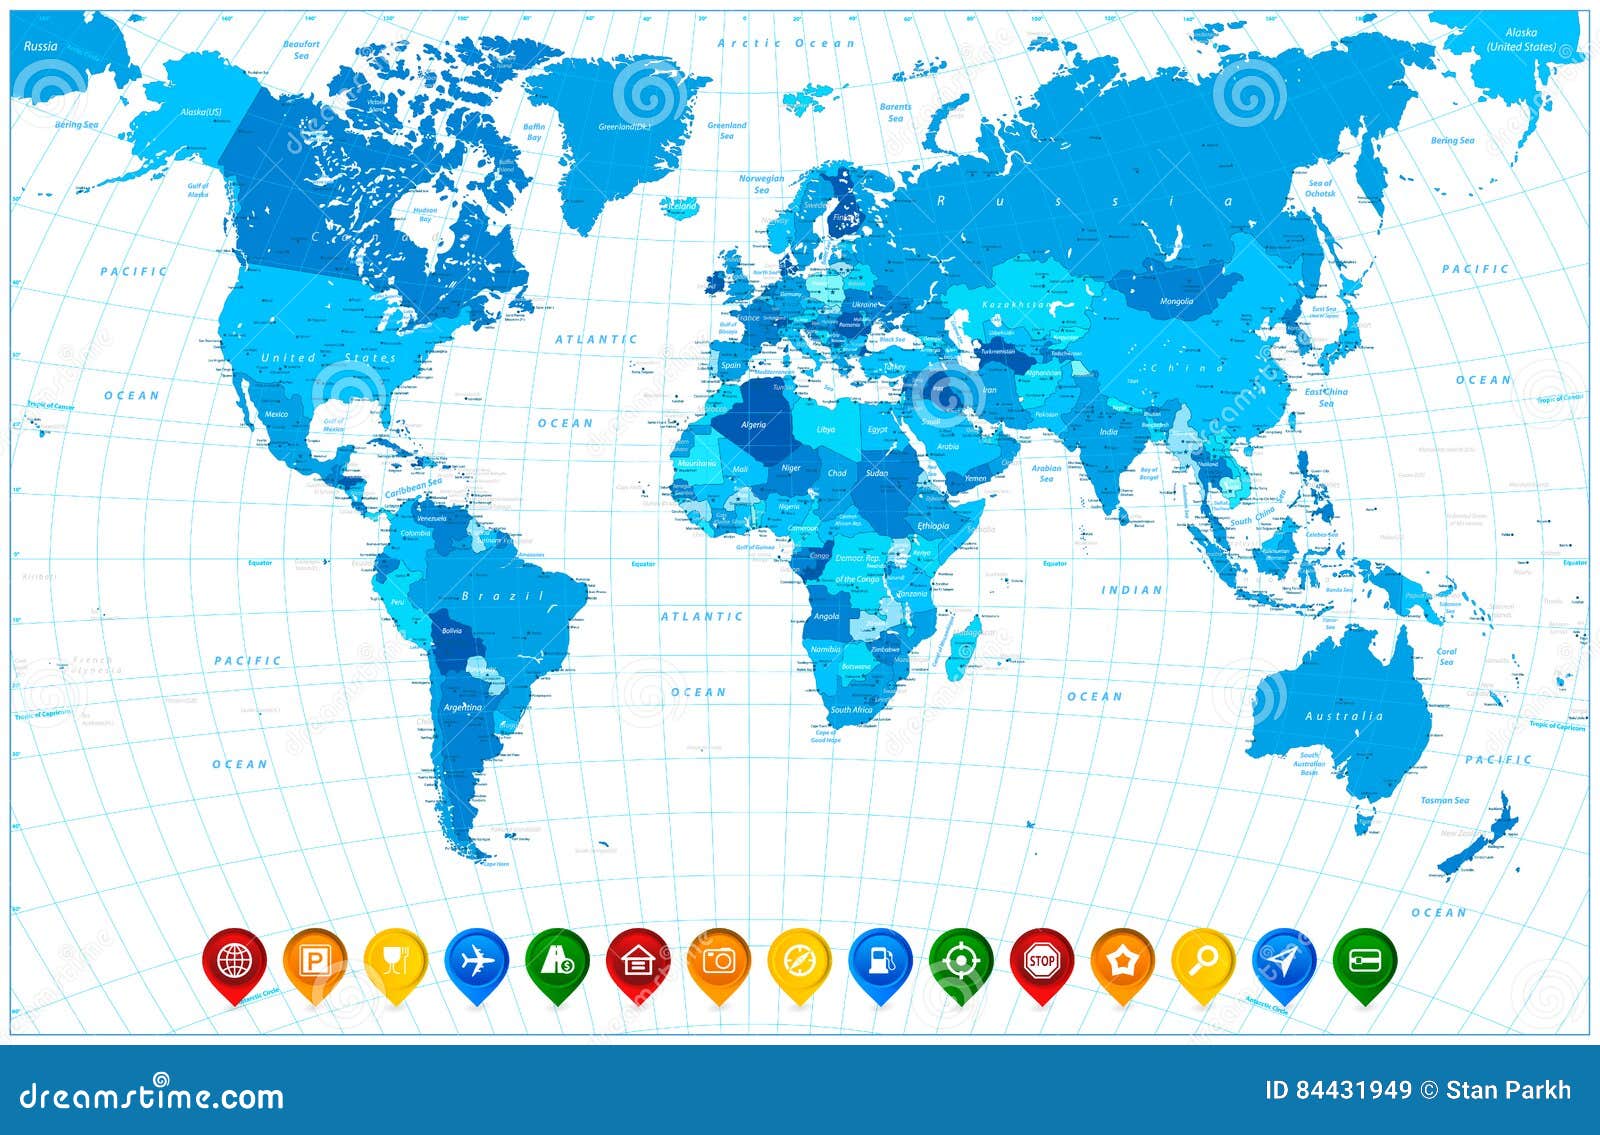 Карта цвета синего. Карта со всеми указателями. Карта мира 2 д дизайна где есть 2 цвета синий и красный.